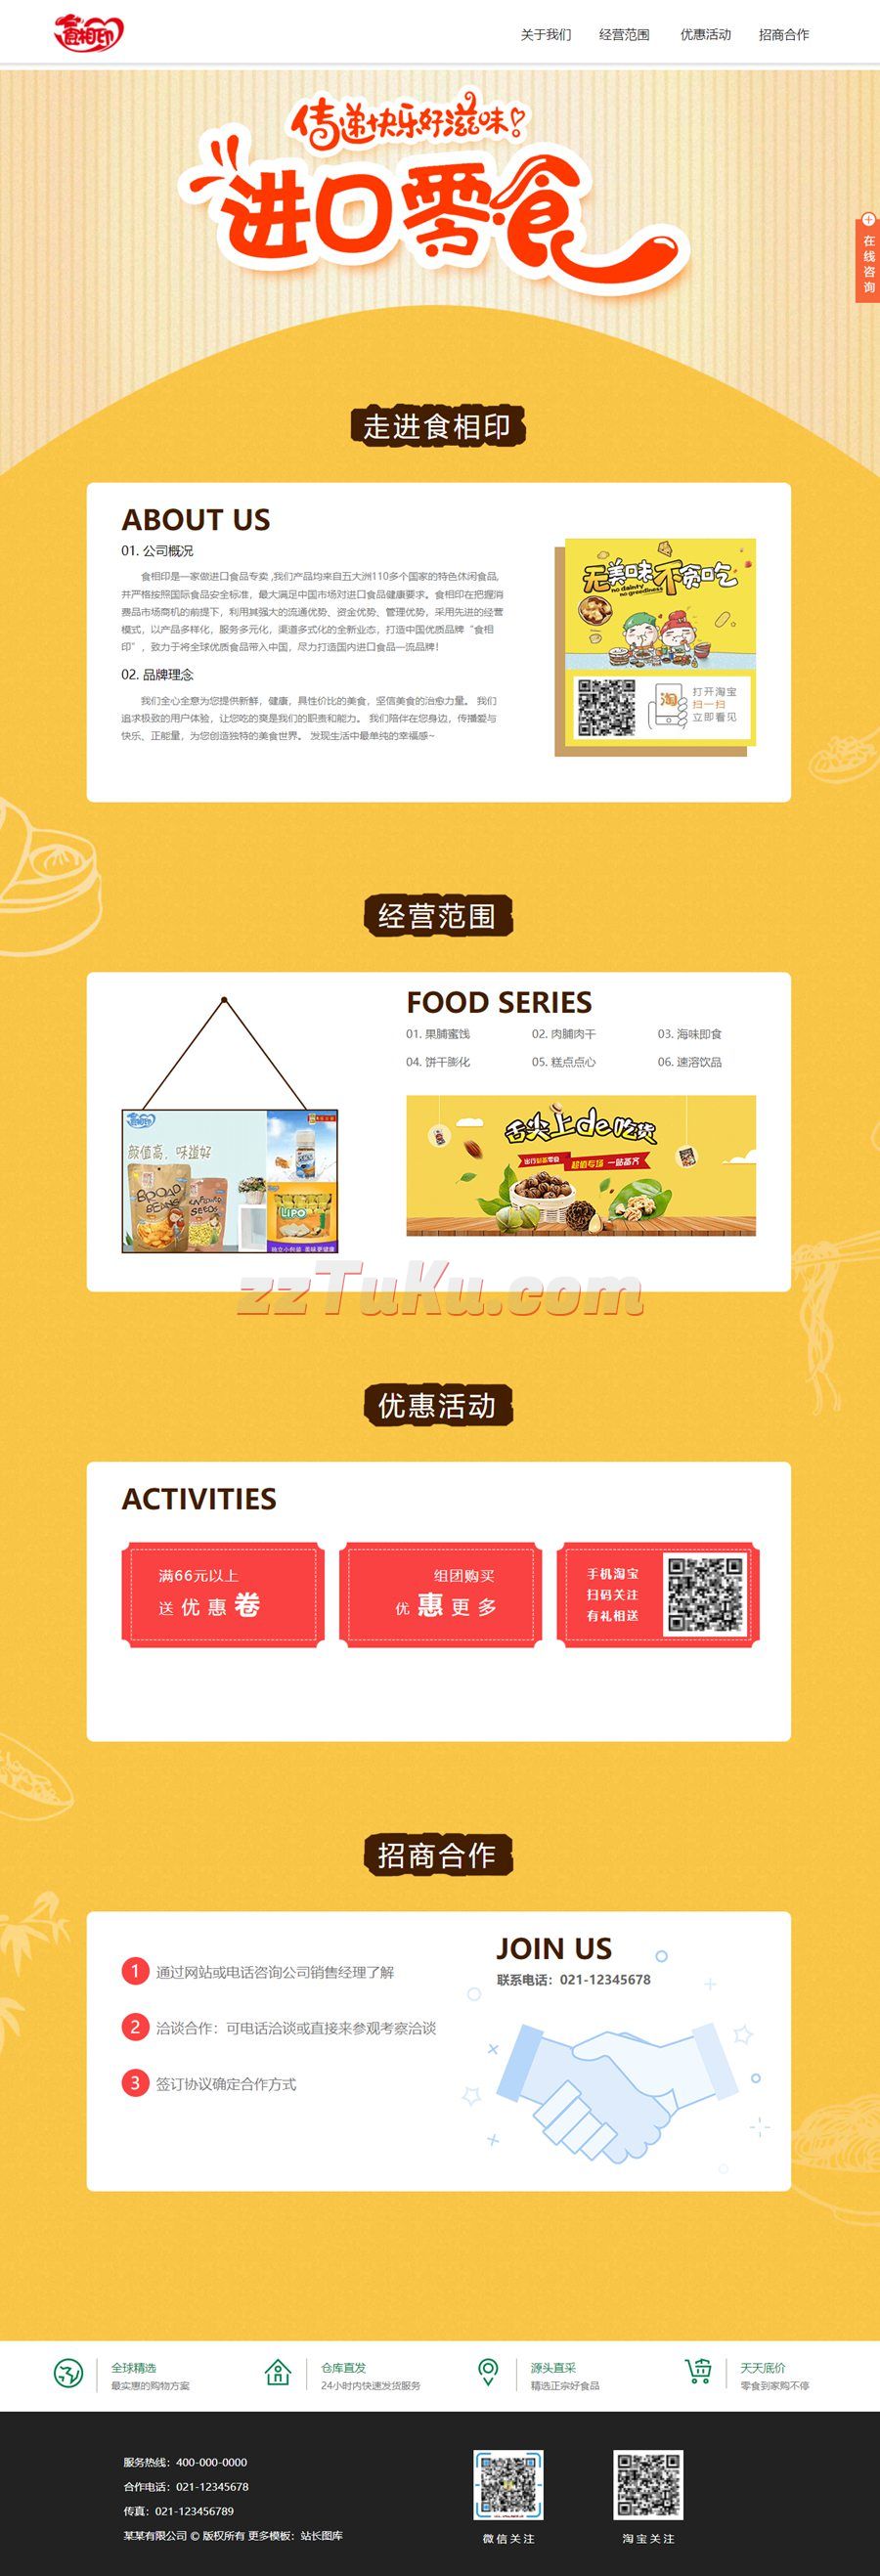 进口食品贸易公司介绍HTML静态页面模板